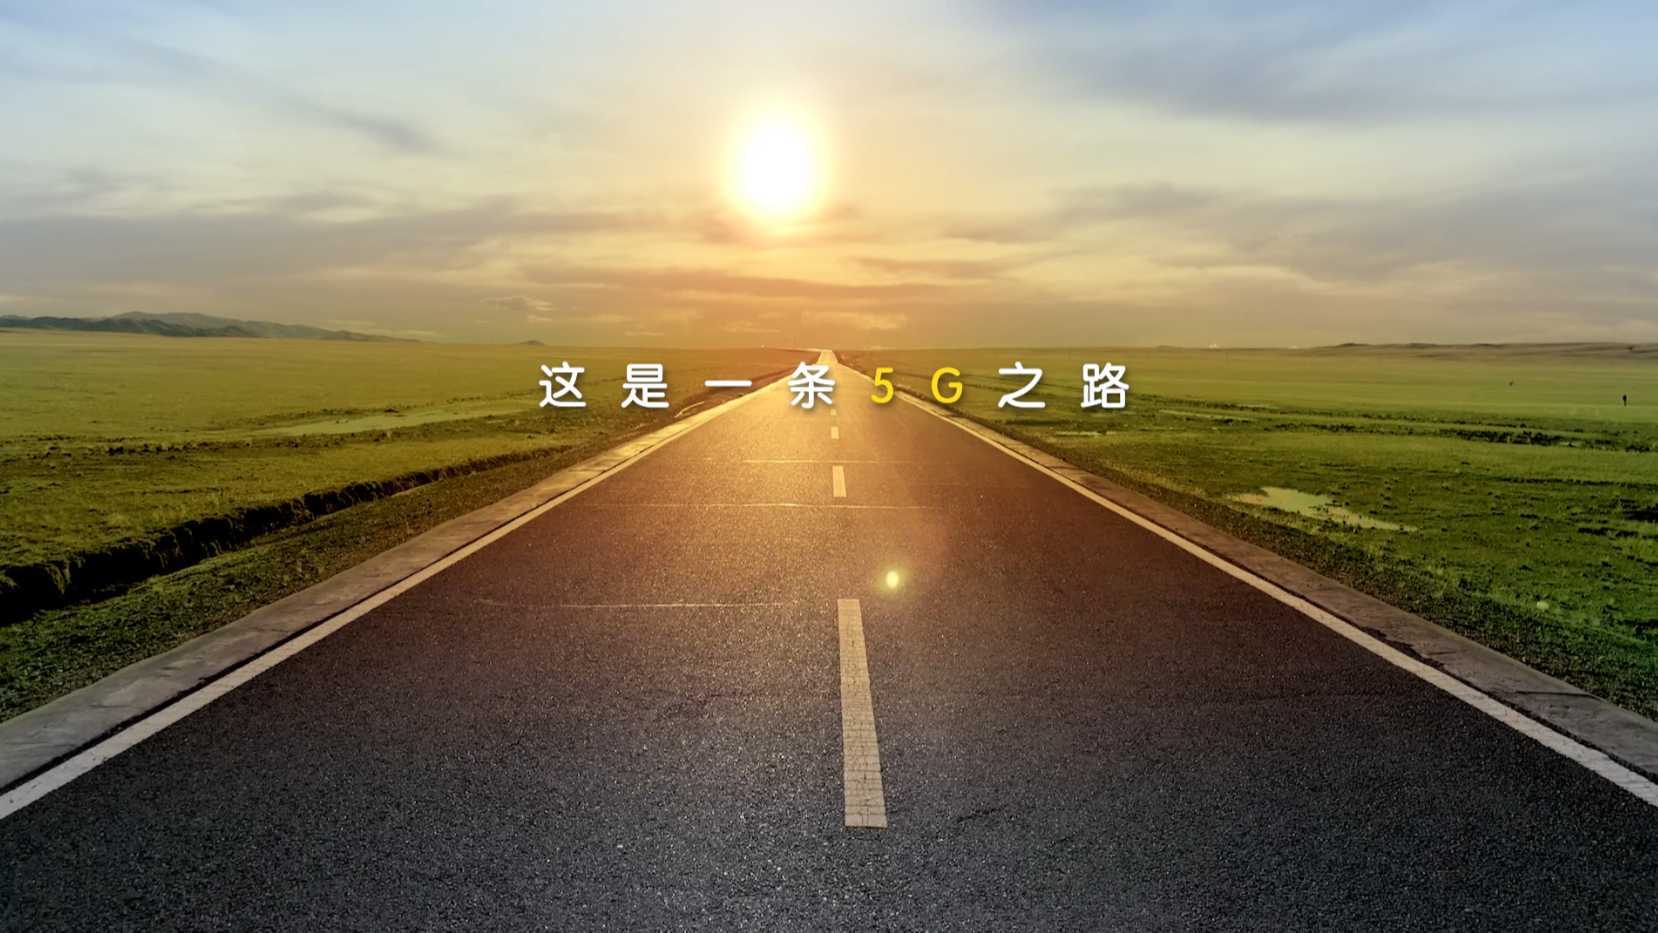 中国移动_5G之路